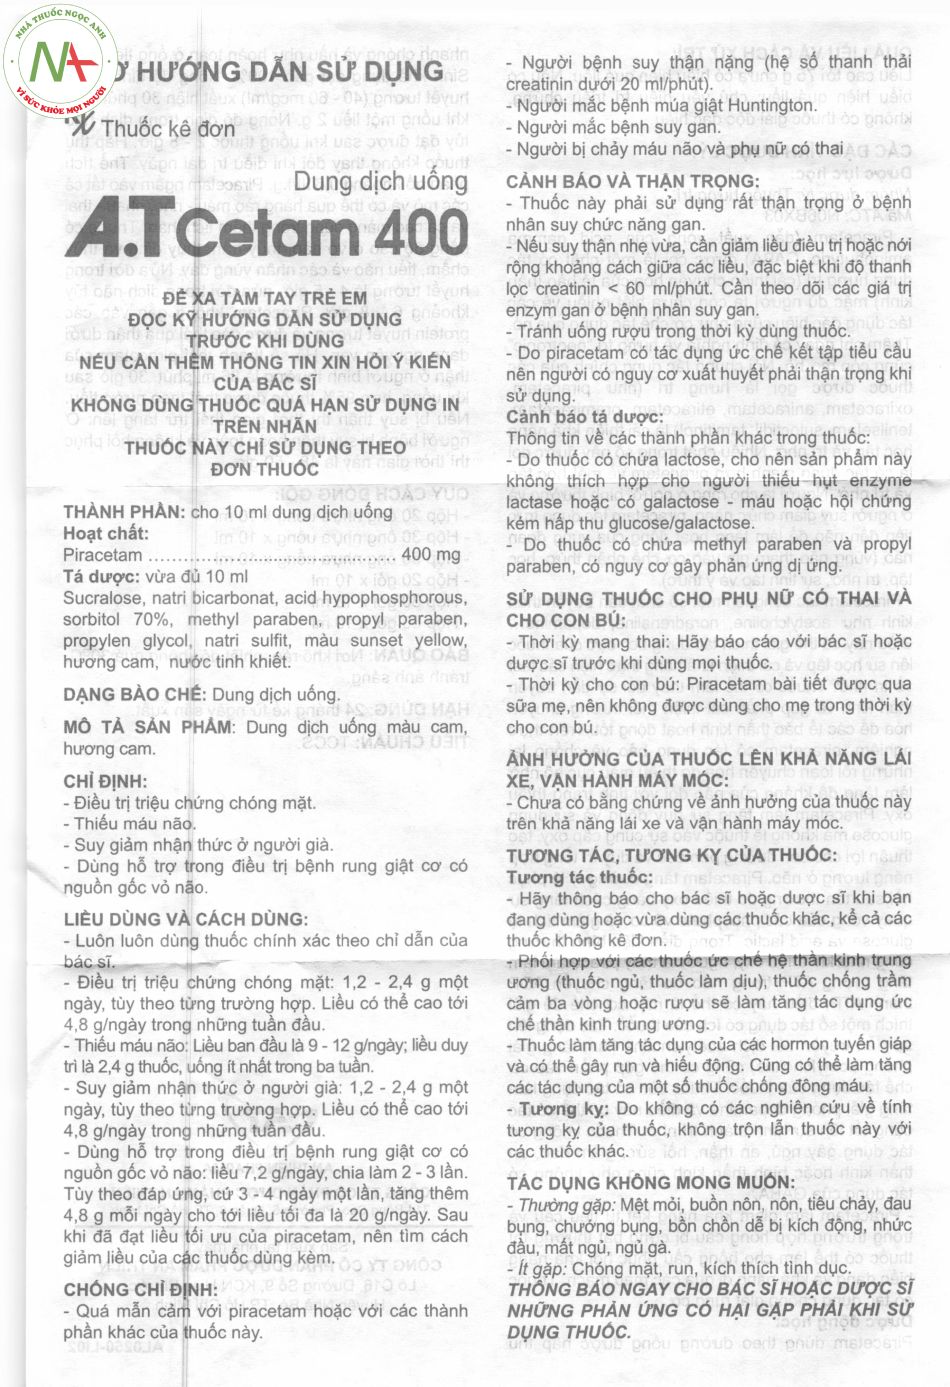 Hướng dẫn sử dụng A.T Cetam 400